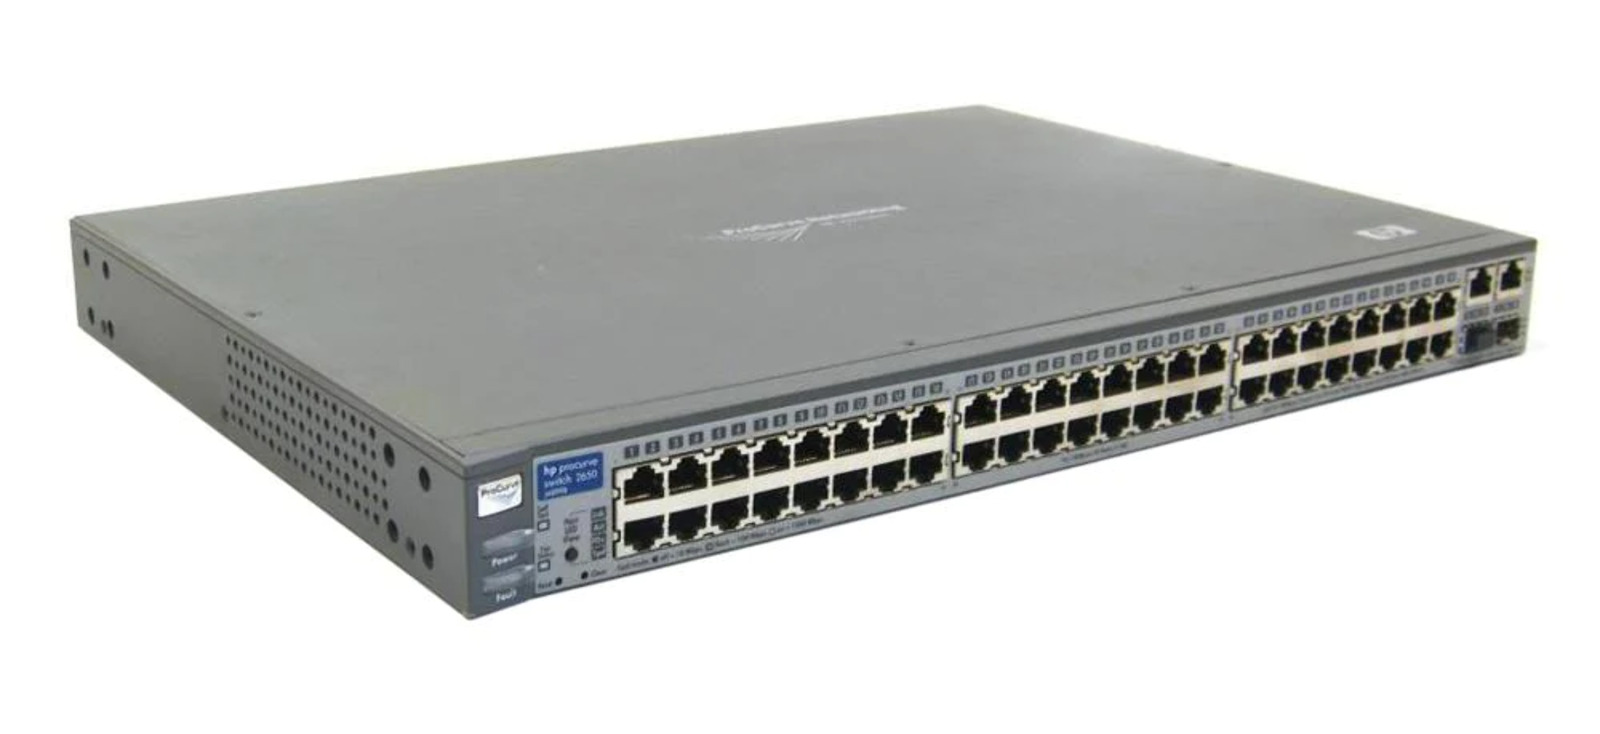 HP J4899B ProCurve Switch 2650 48-Ports - USED